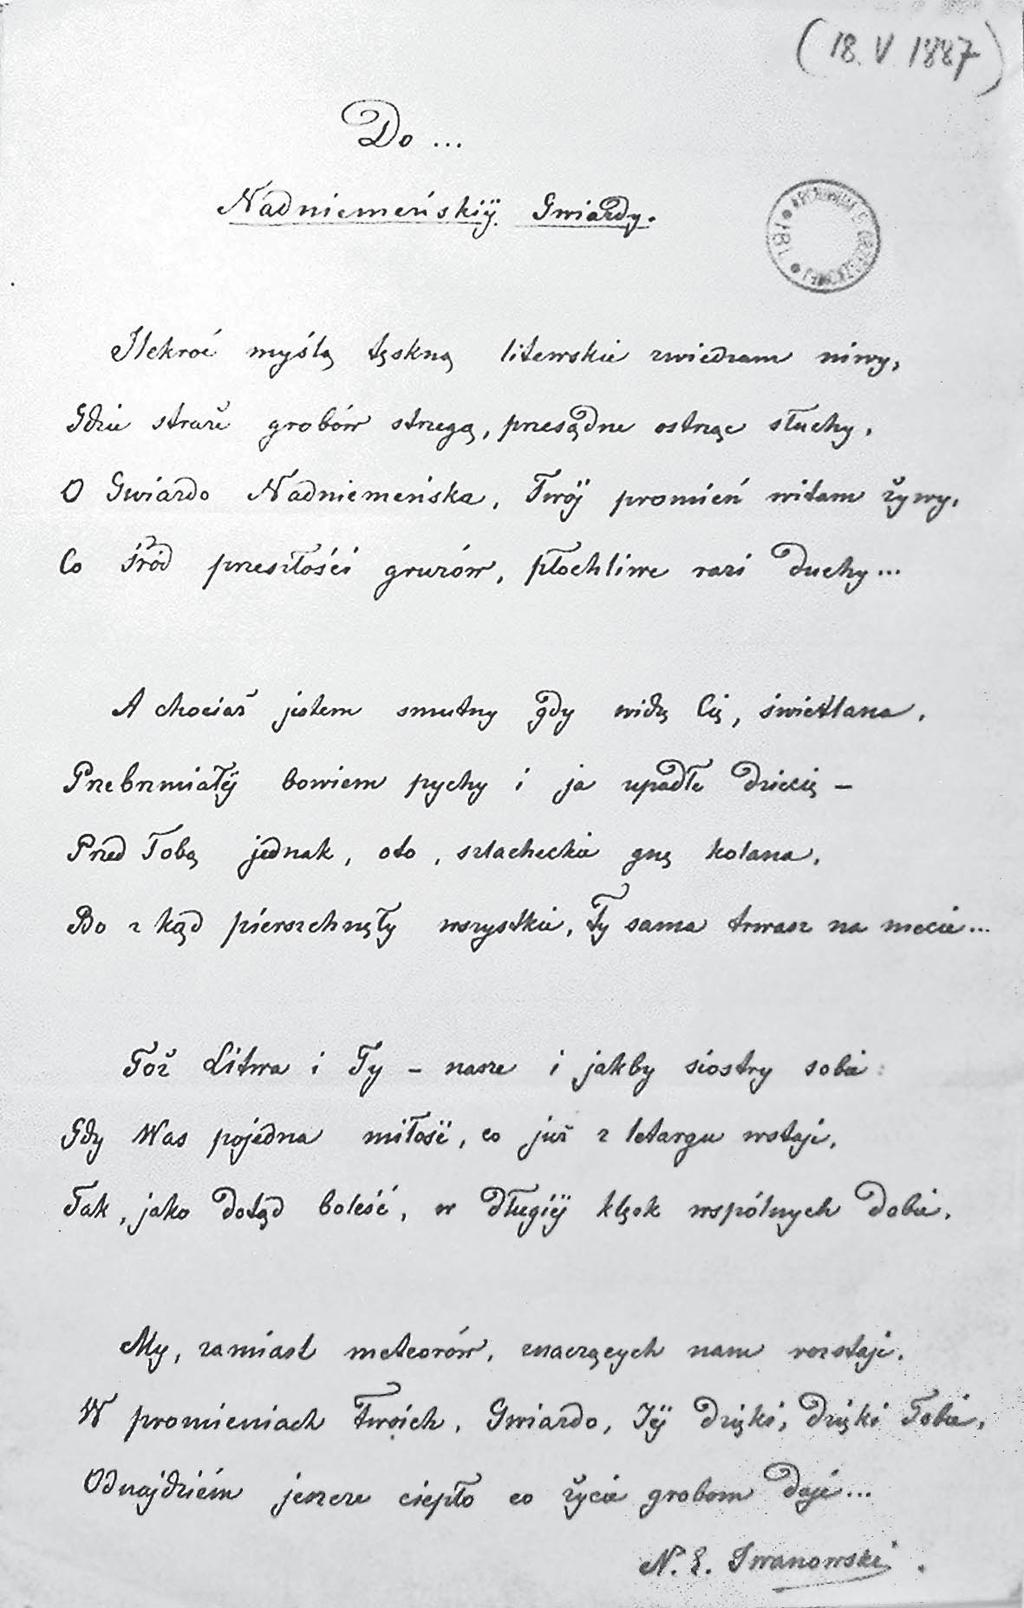 GIEDRIUS ŽIDONIS, JOWITA NIEWULIS-GRABLUNAS 2 pav. N. E. Iwanowskio eilėraštis Panemunių žvaigždei, skirtas E. Orzeszkowai. 1887 m. pradžia. Svetima ranka įrašyta data viršuje klaidinga.